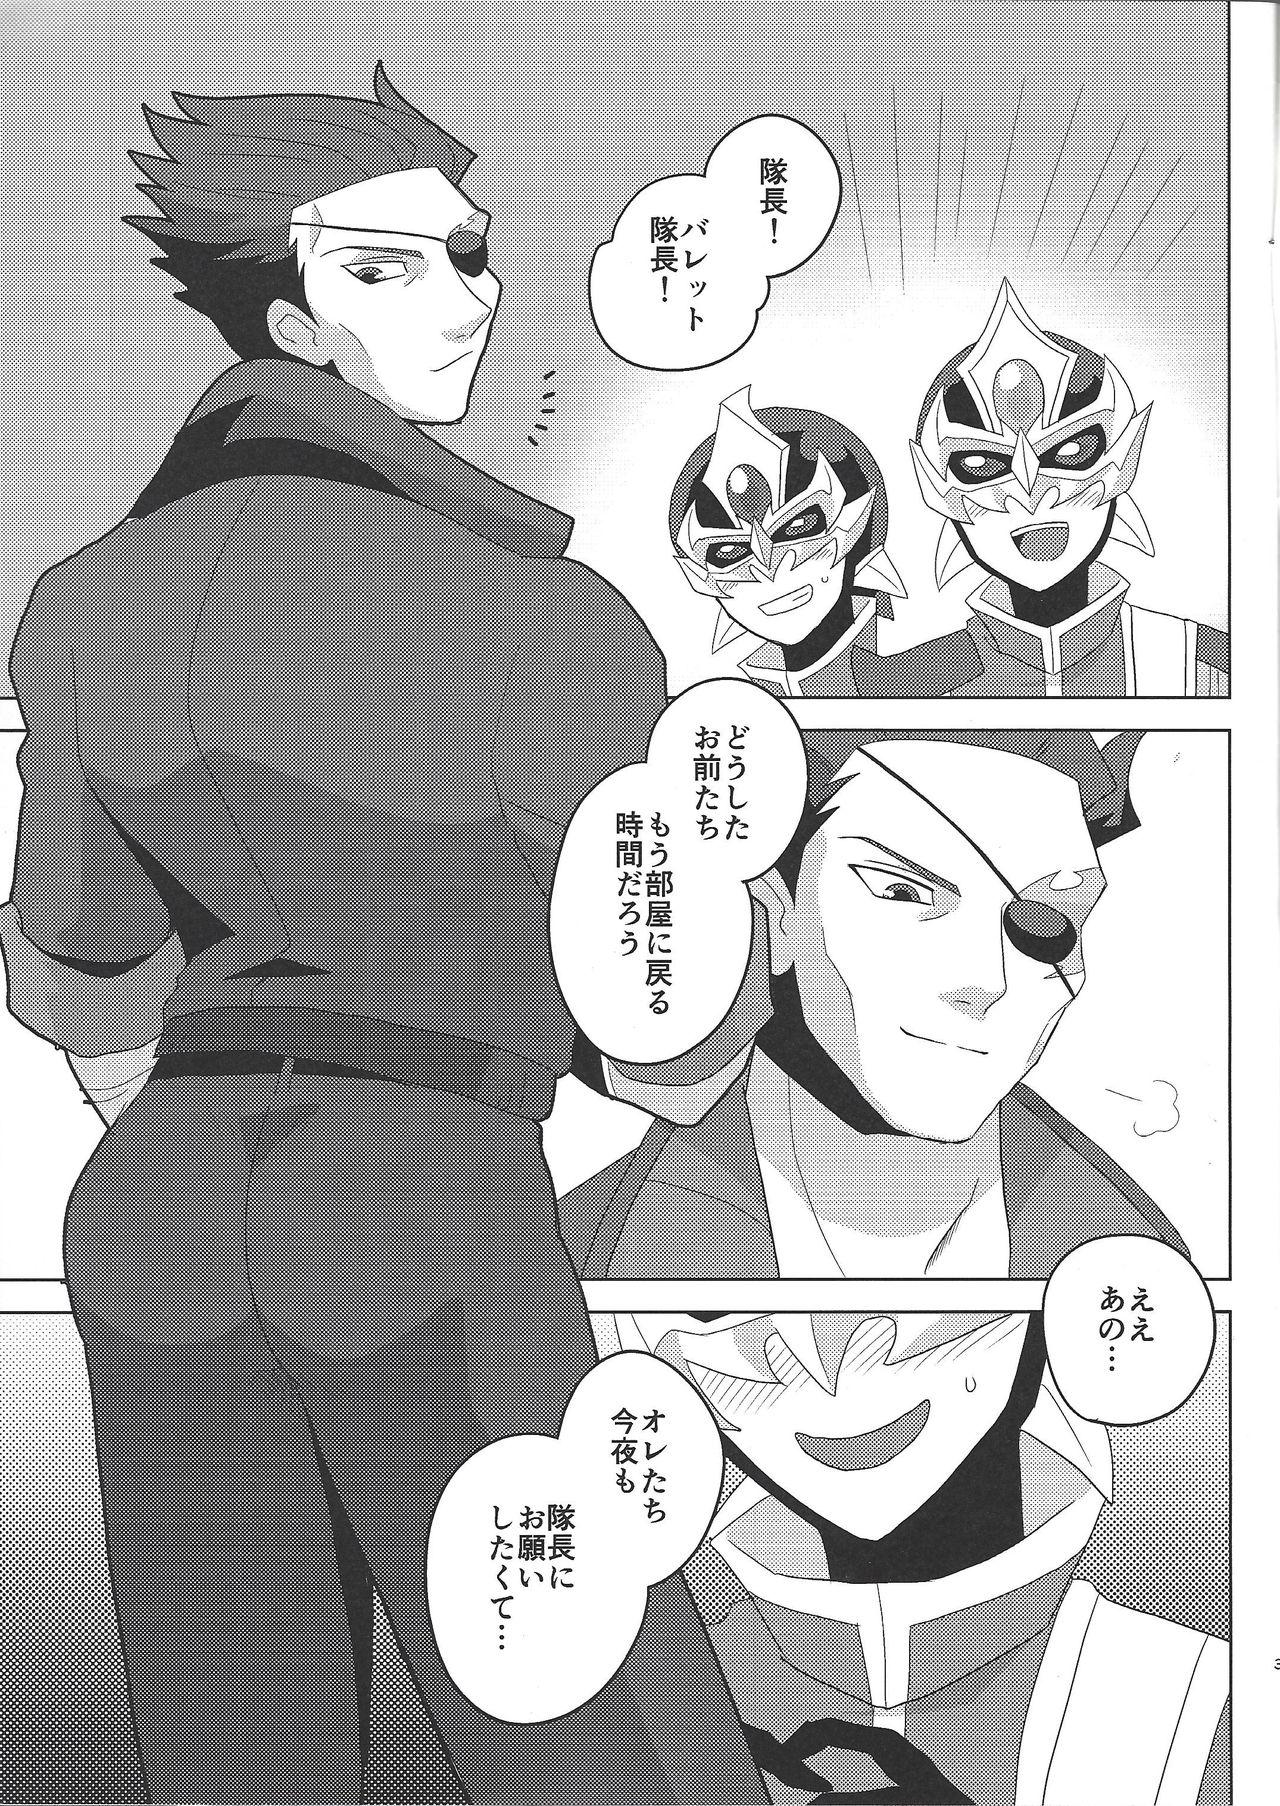 Tall Taichō! Kon'ya mo onegai shimasu! - Yu-gi-oh arc-v Ginger - Page 2